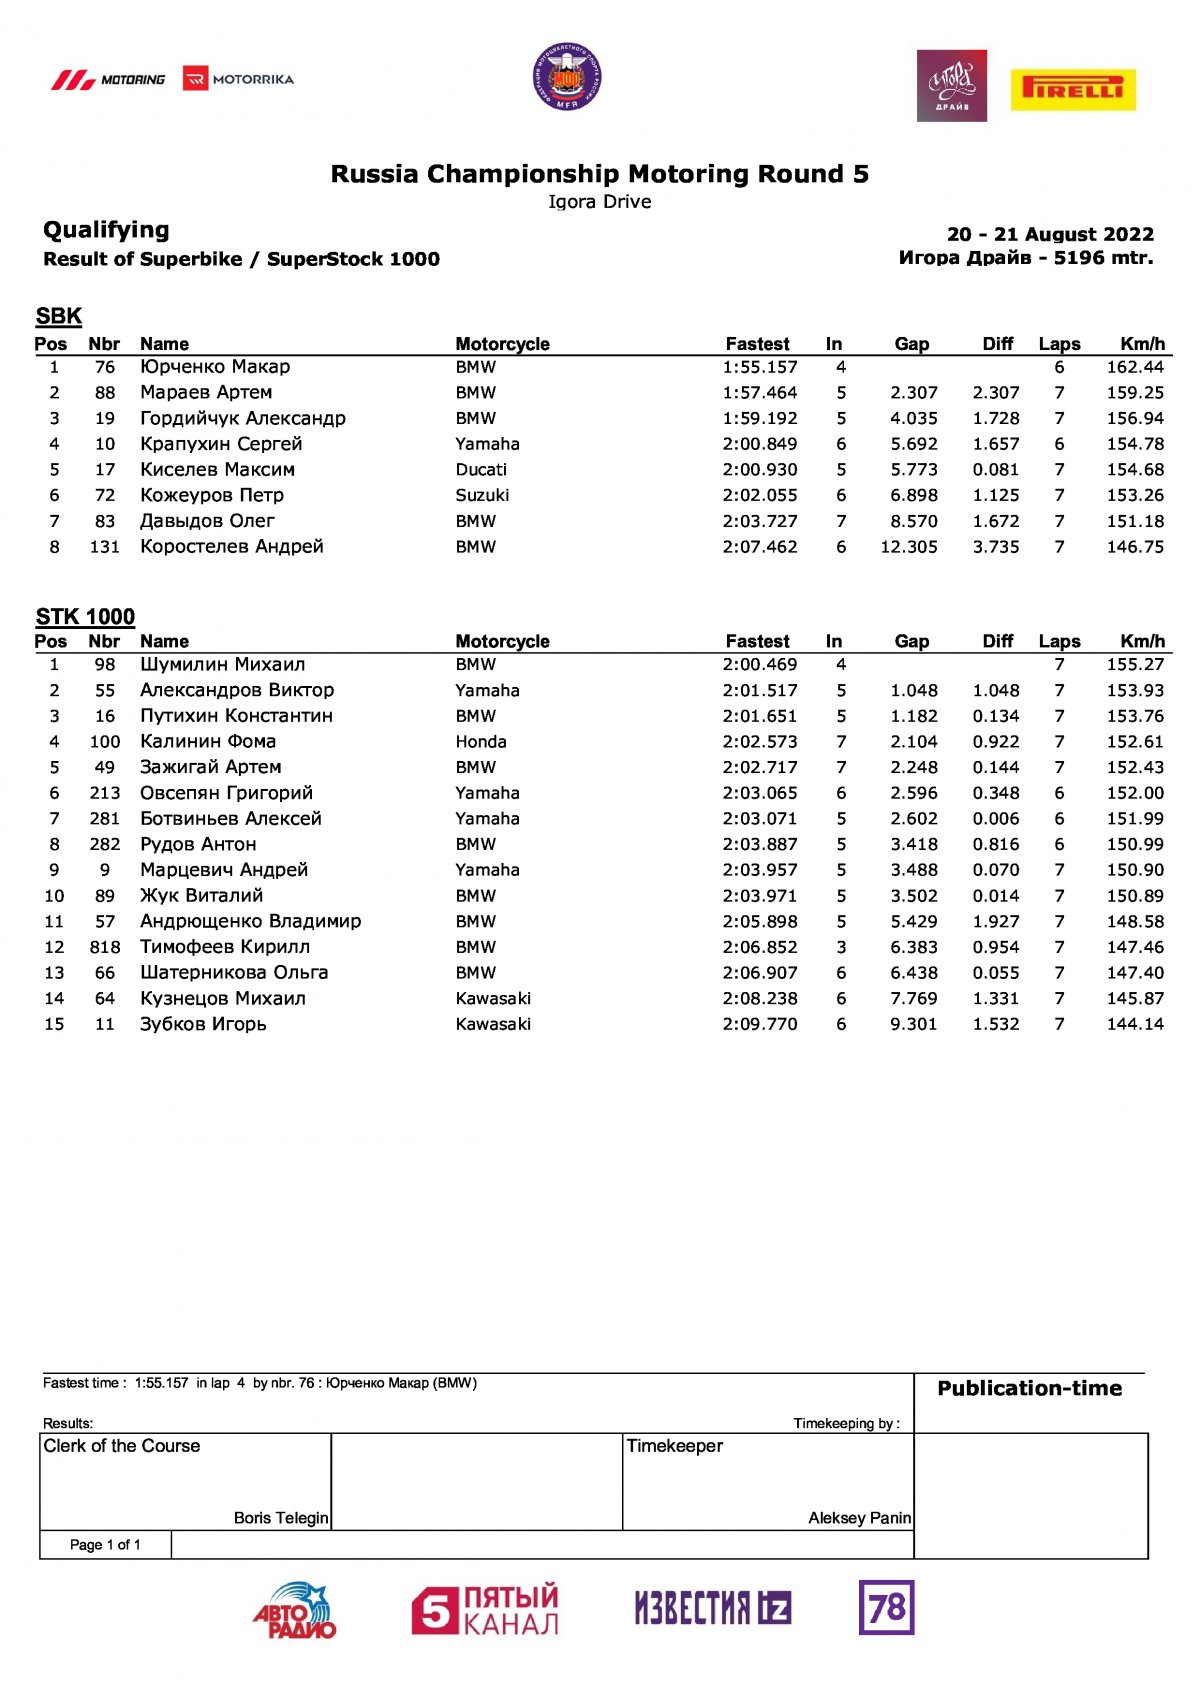 Результаты квалификации 5 этапа ЧР / Supebike и Superstock-1000 (20.08.2022)